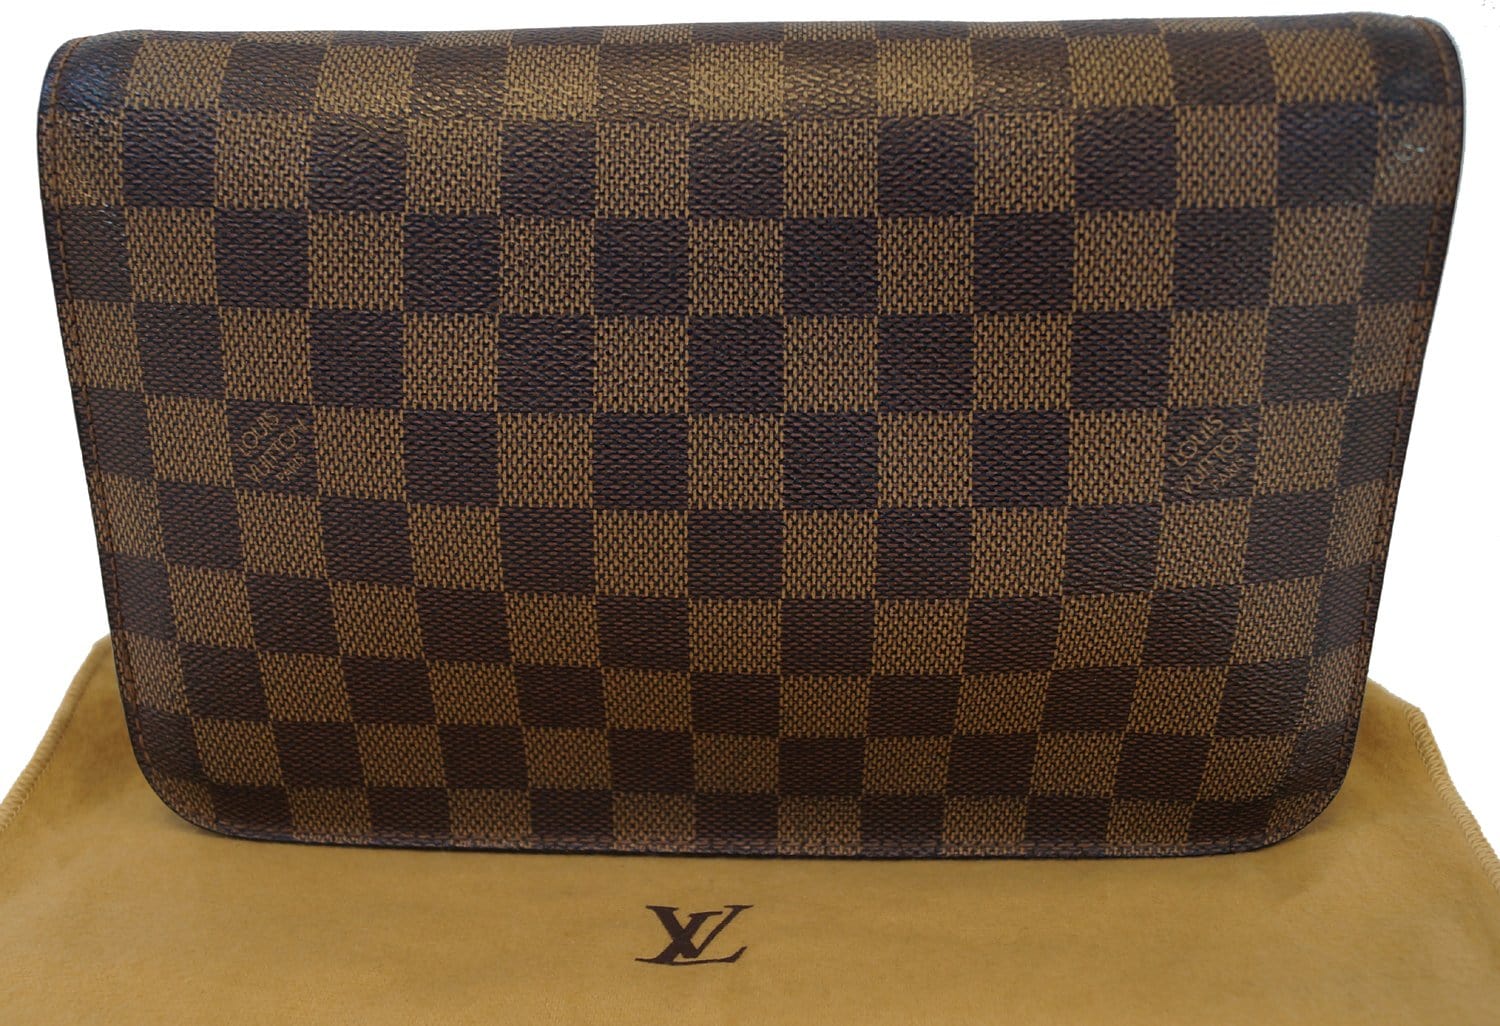 Louis Vuitton Saint-Louis Clutch Bag